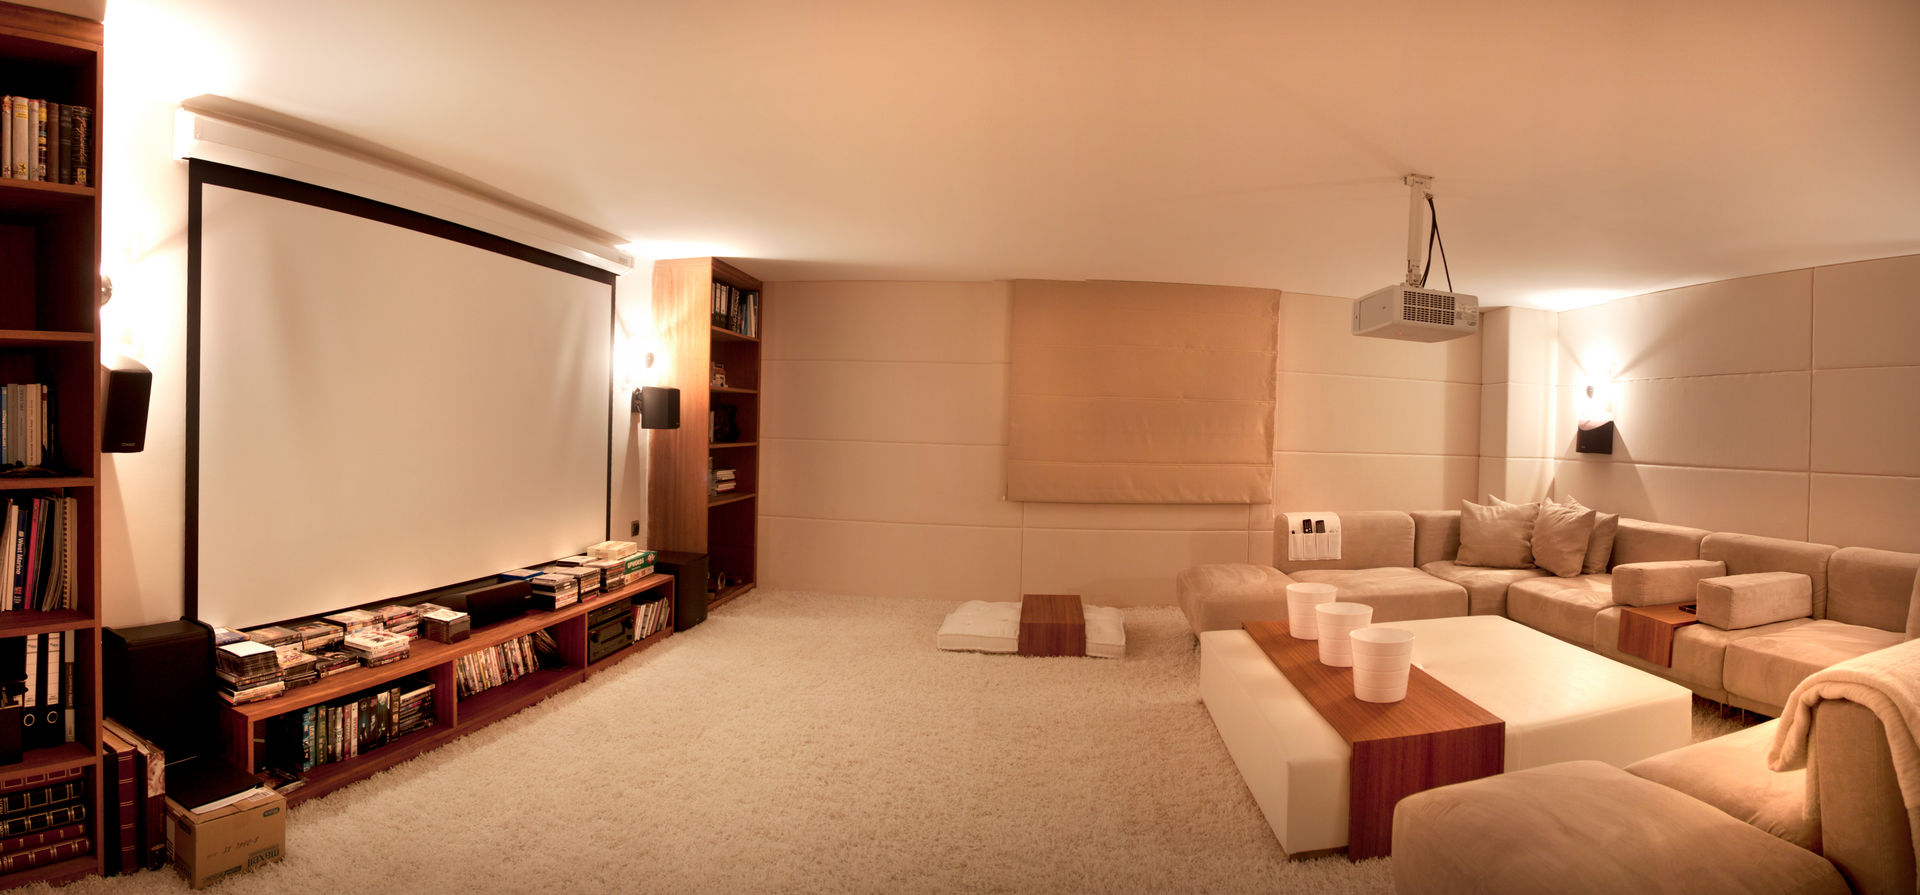 SAHİLEVLERİ PROJE, As Tasarım - Mimarlık As Tasarım - Mimarlık Modern Media Room Furniture